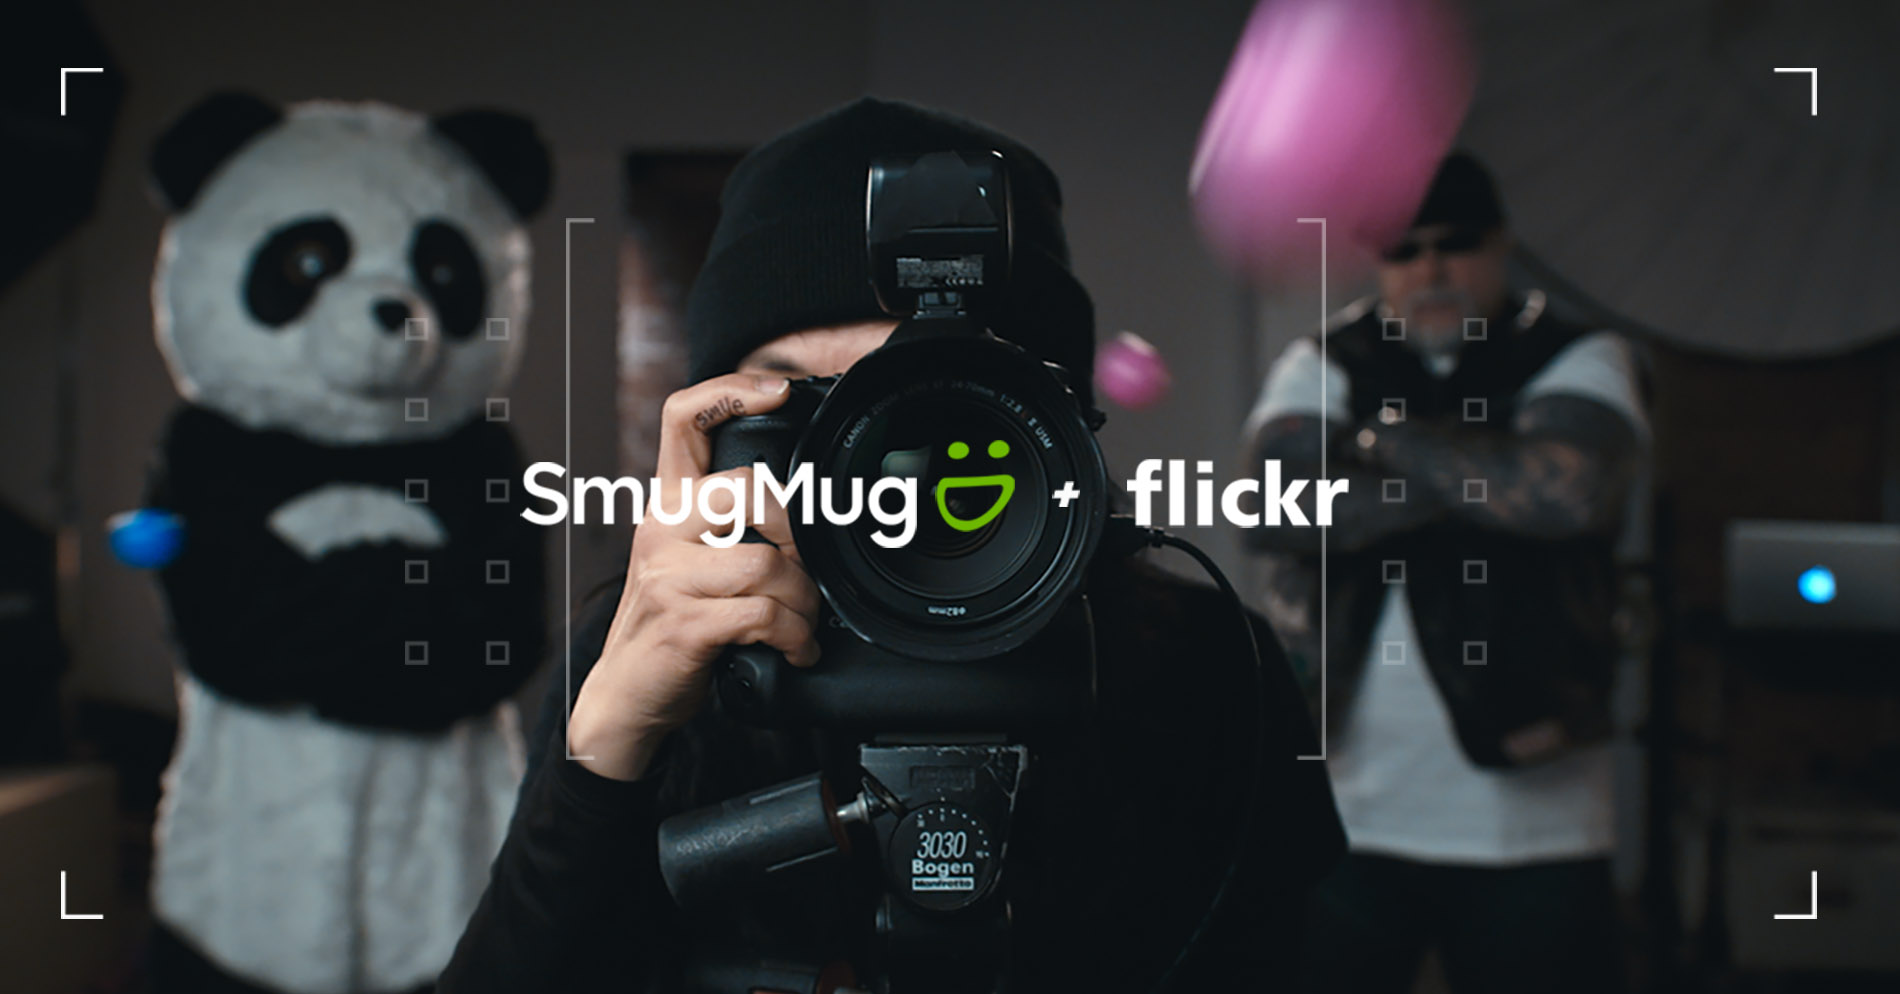 Flickr joins SmugMug